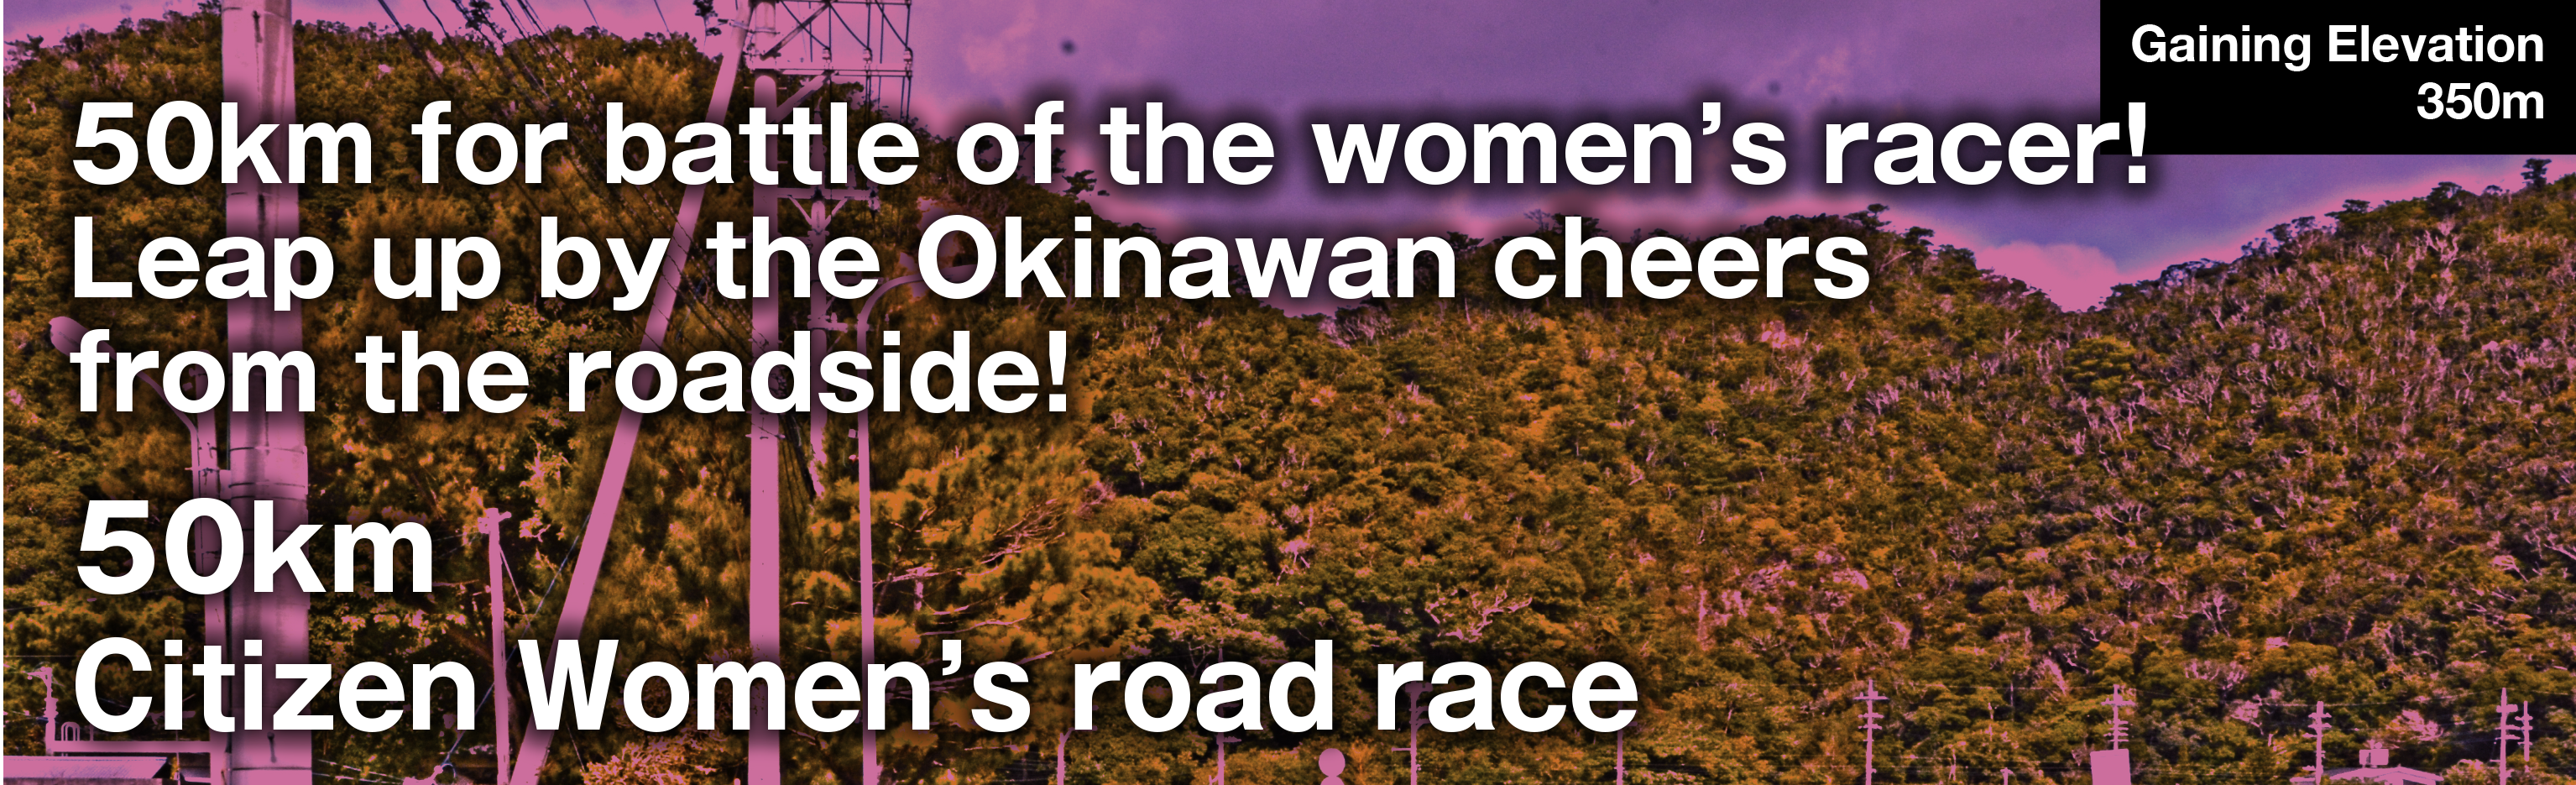 50km Citizen Women's Road Race